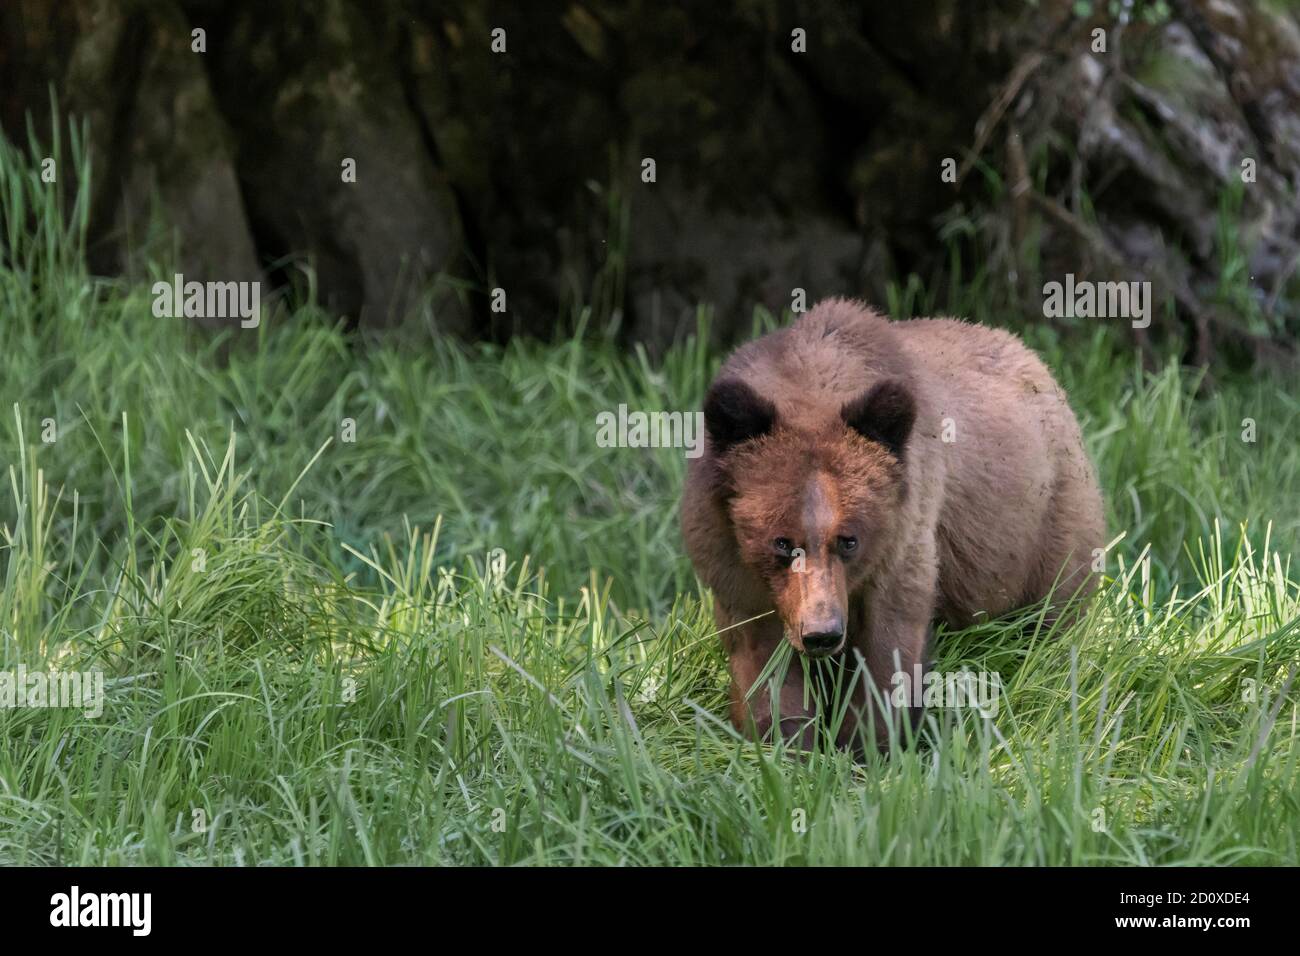 Adulto oso grizzly comer hierba de la orilla por un acantilado, Khutzeymateen Inlet, BC Foto de stock